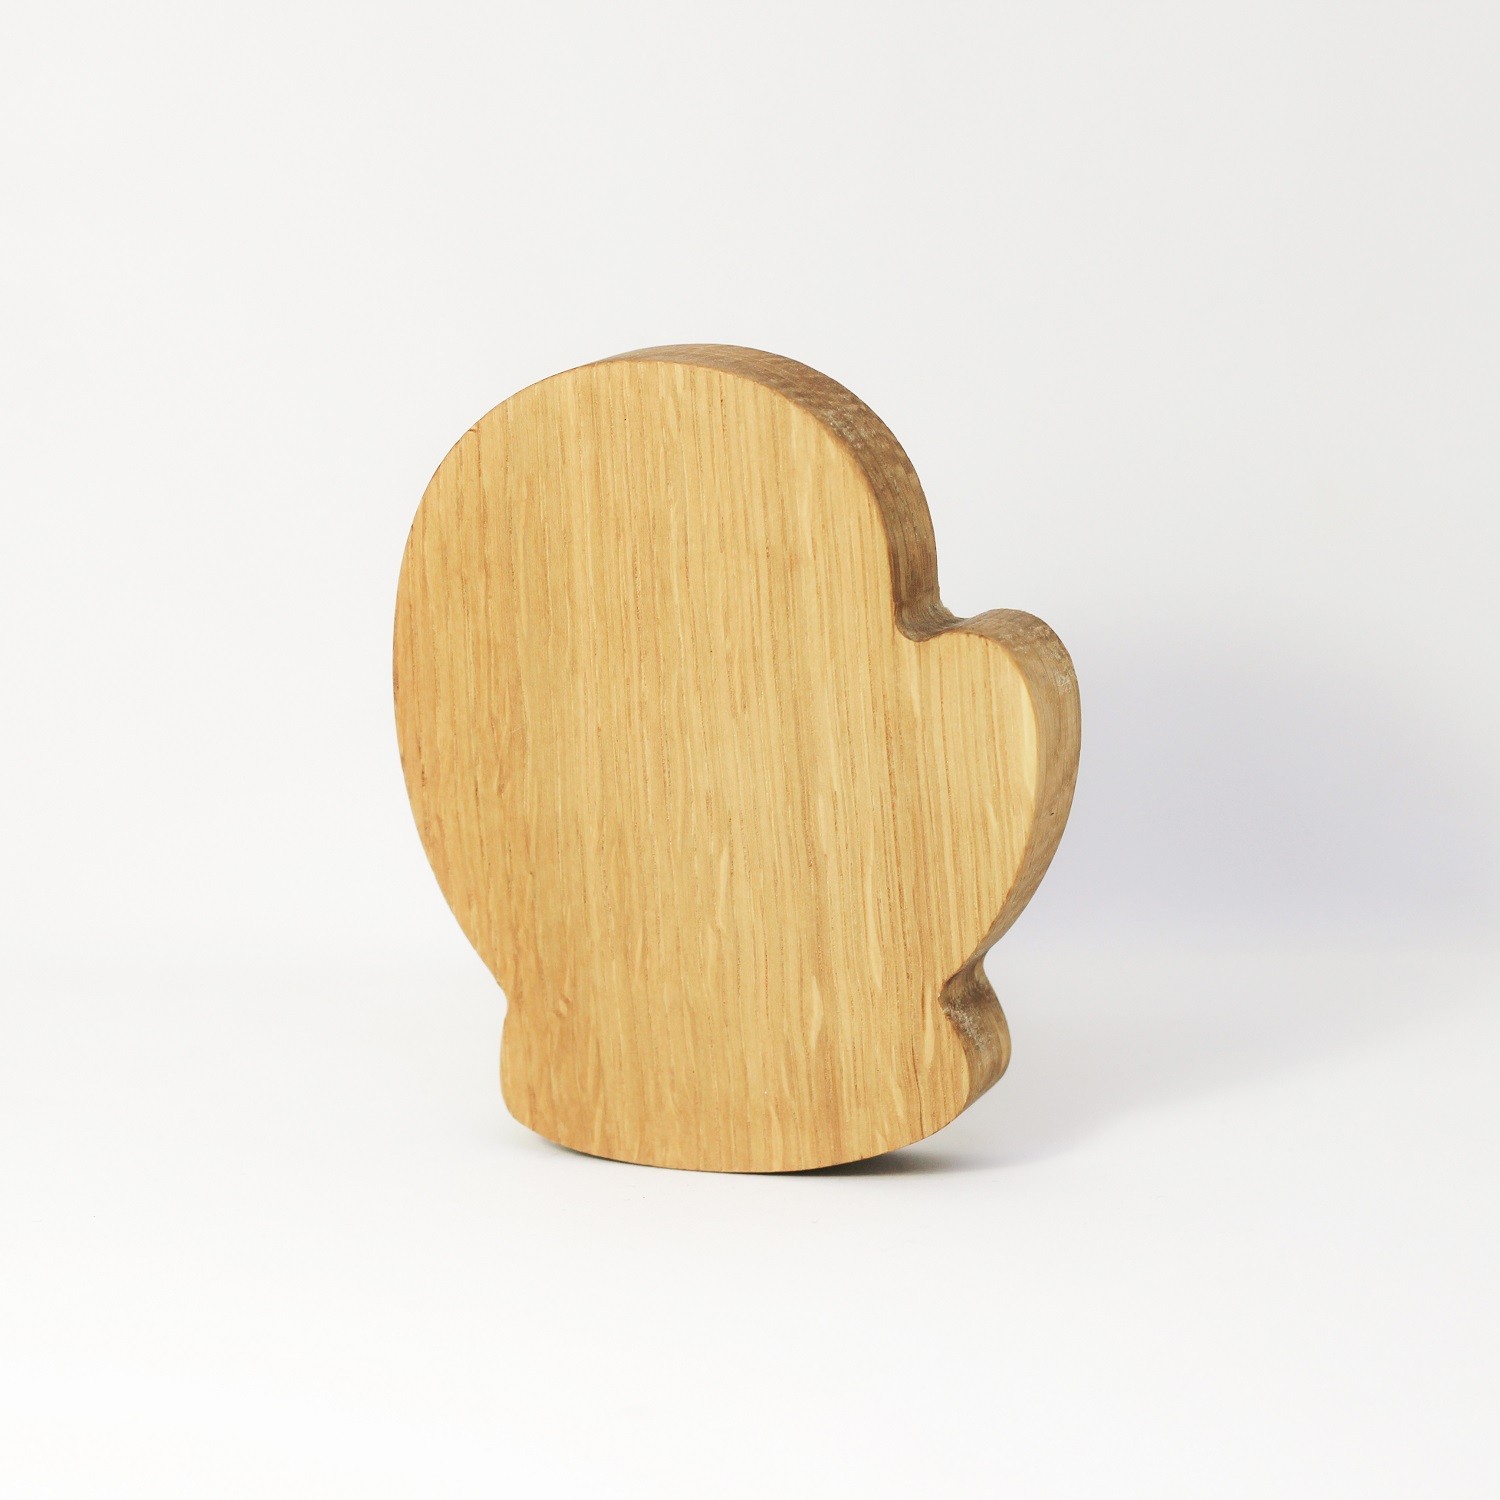 Wooden Mitten Figurine